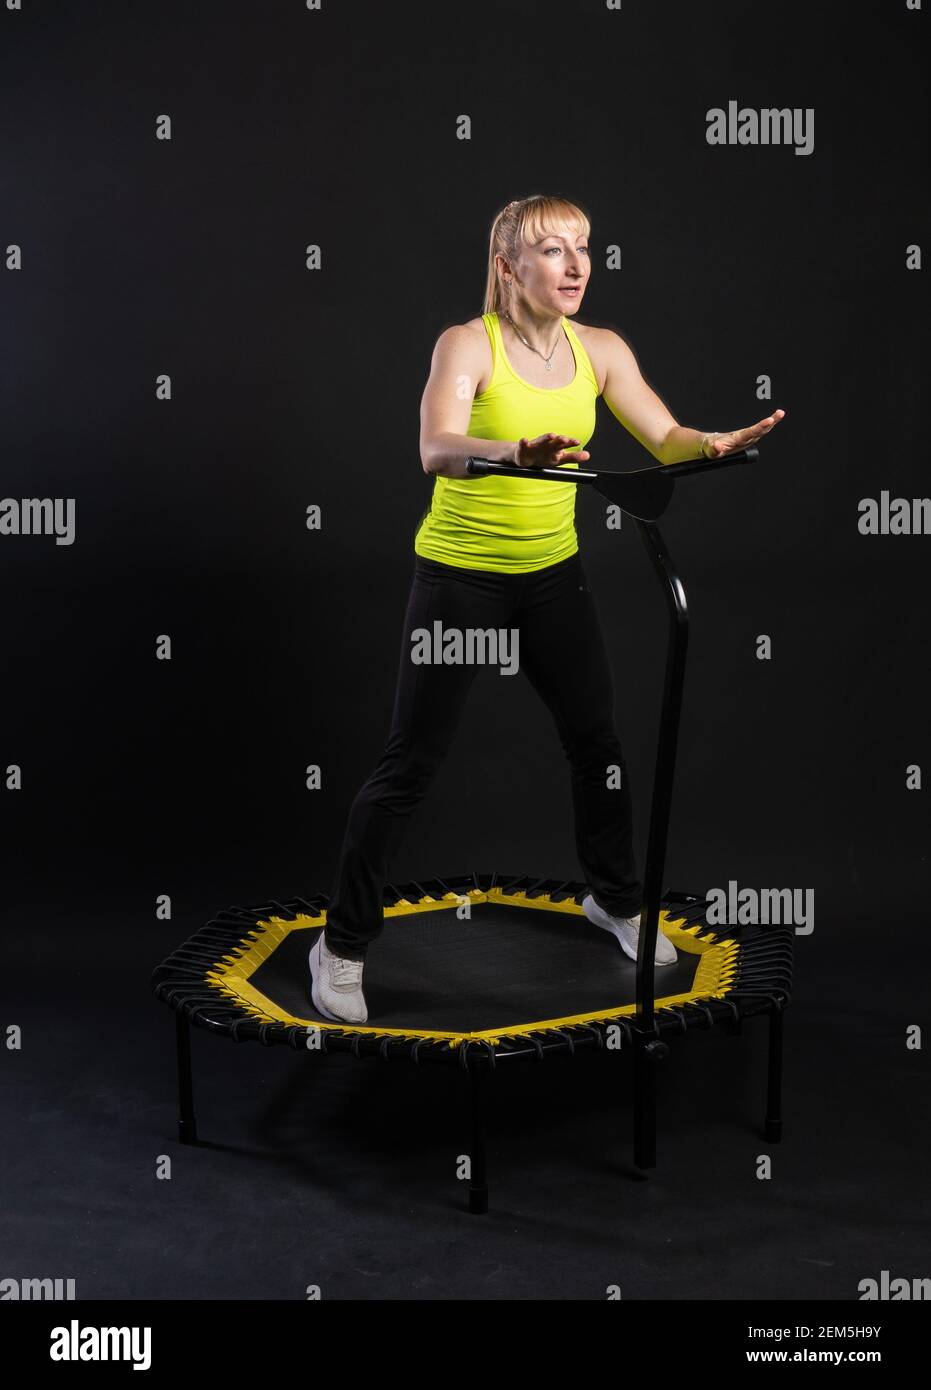 Ragazza su un trampolino fitness su sfondo nero in una t-shirt gialla donna, movimento del corpo attrezzatura, rimbalzo muscolare. Movimento bianco del mosca, mus fisico Foto Stock